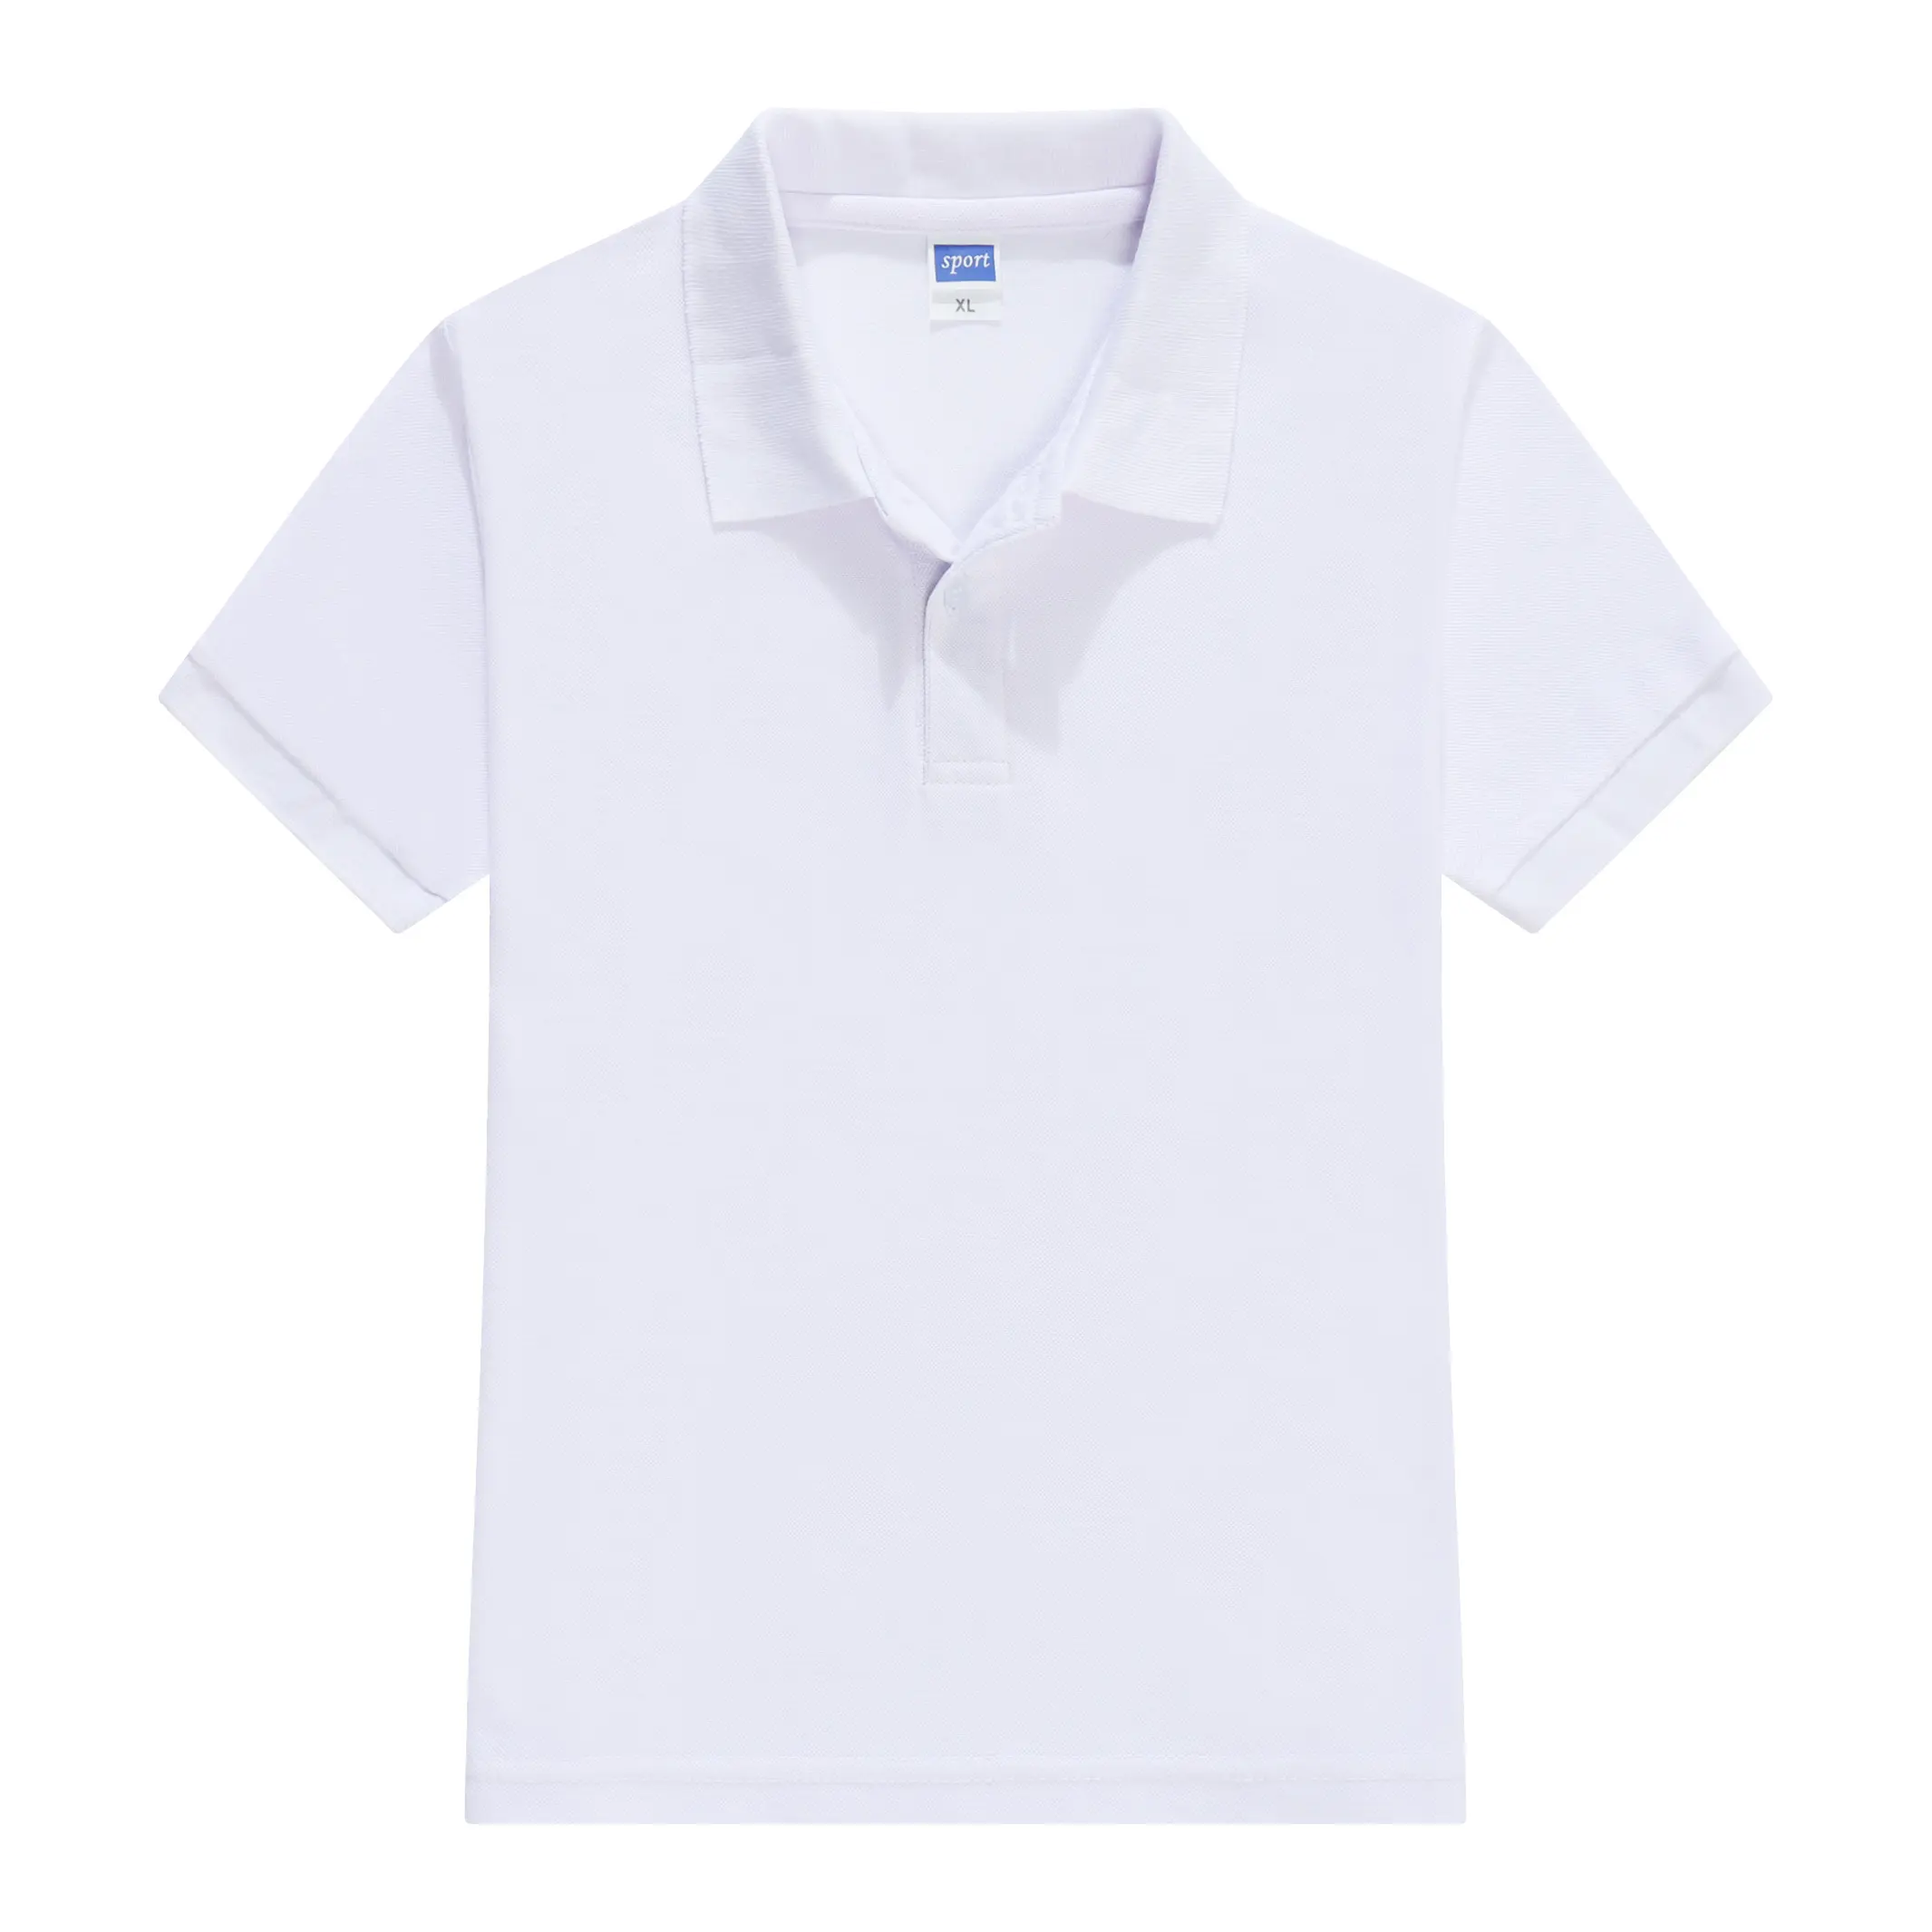 Rubysub RB-1870 Yüksek Kaliteli Çocuklar boş tişört Isı Transfer Baskı T shirt Toptan Erkek/Kız